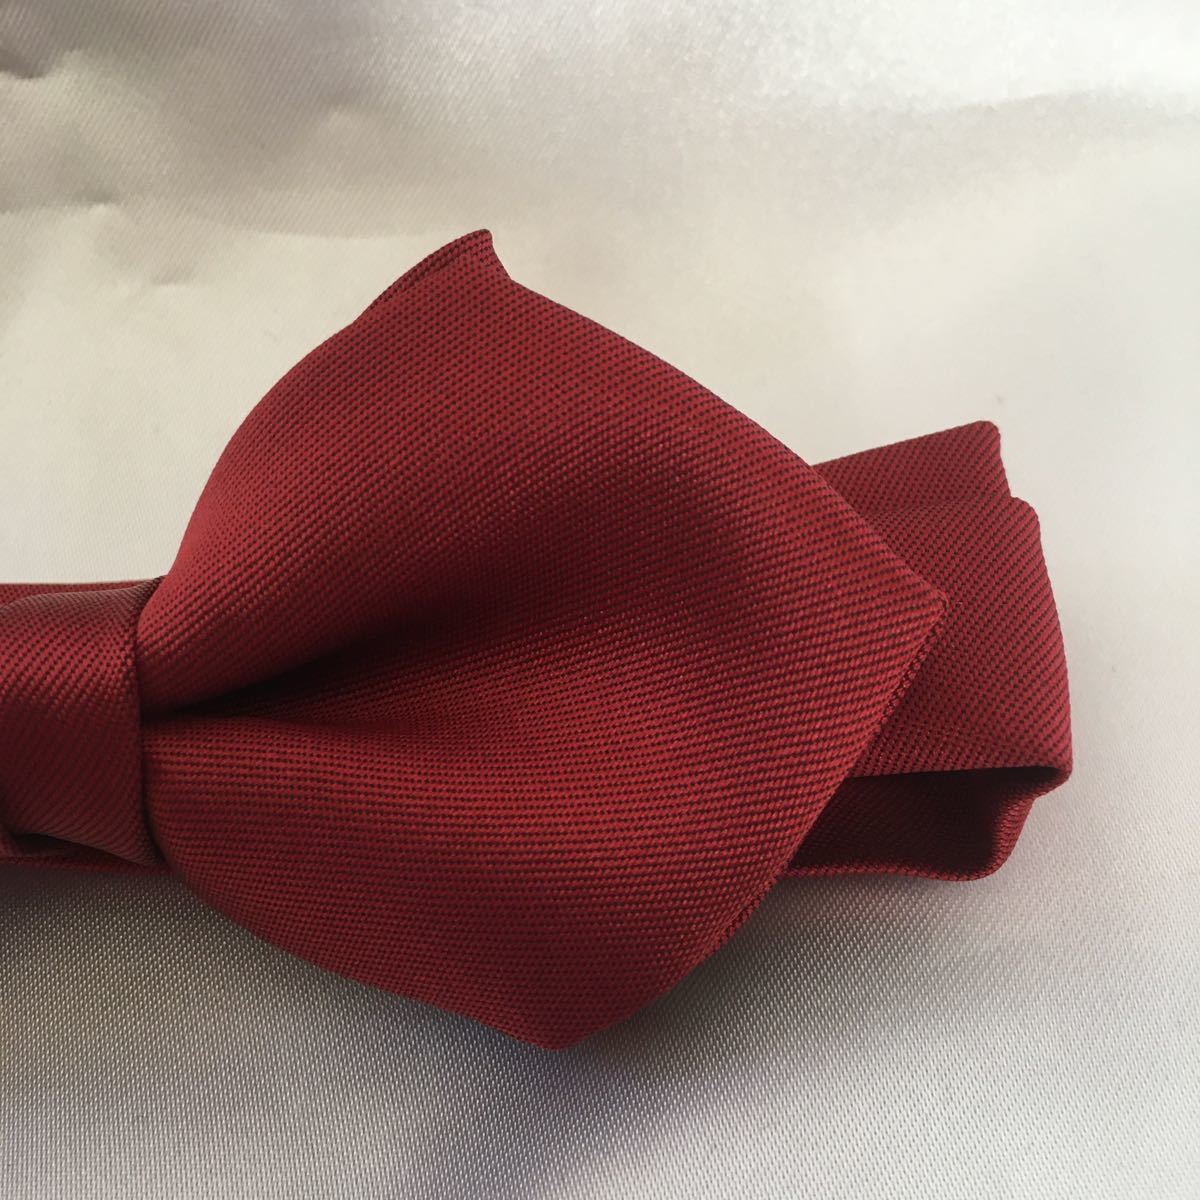 [ новый товар быстрое решение!] формальный бабочка галстук темно-красный po Inte to type 